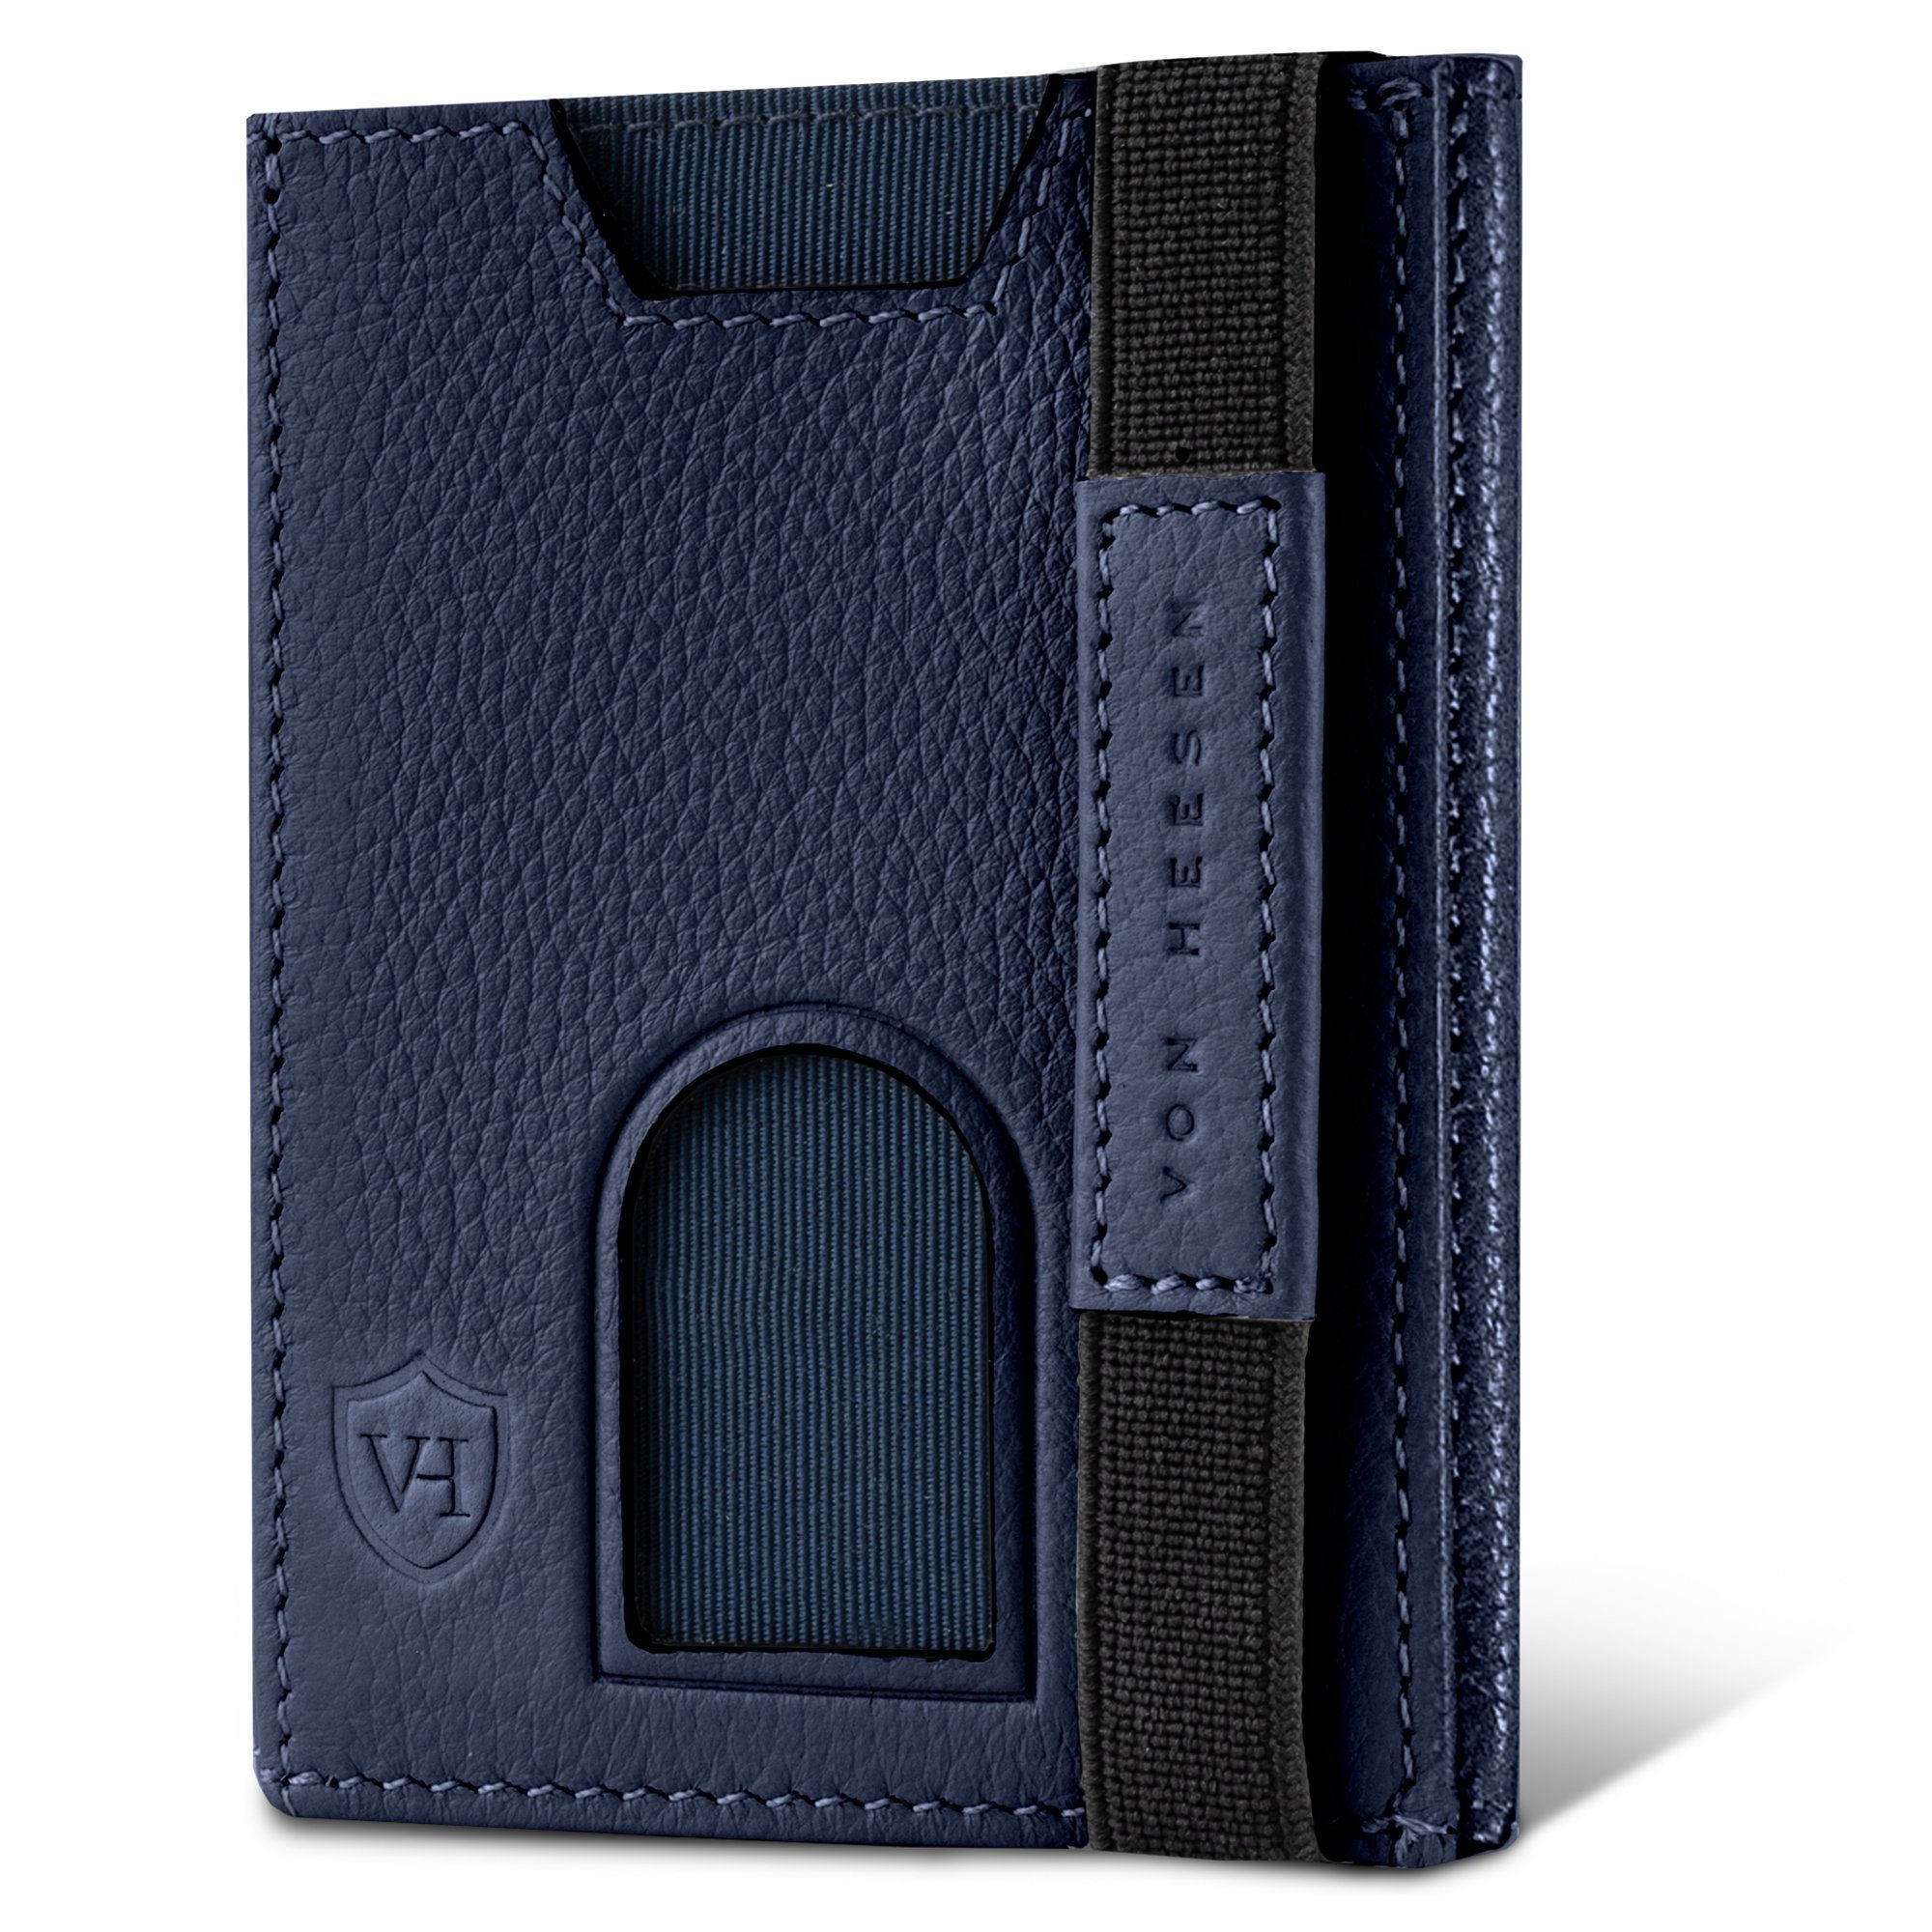 6 VON RFID-Schutz HEESEN & inkl. Geldbörse Geldbeutel Portemonnaie Wallet Geschenkbox Whizz Slim mit Wallet Kartenfächer, Blau